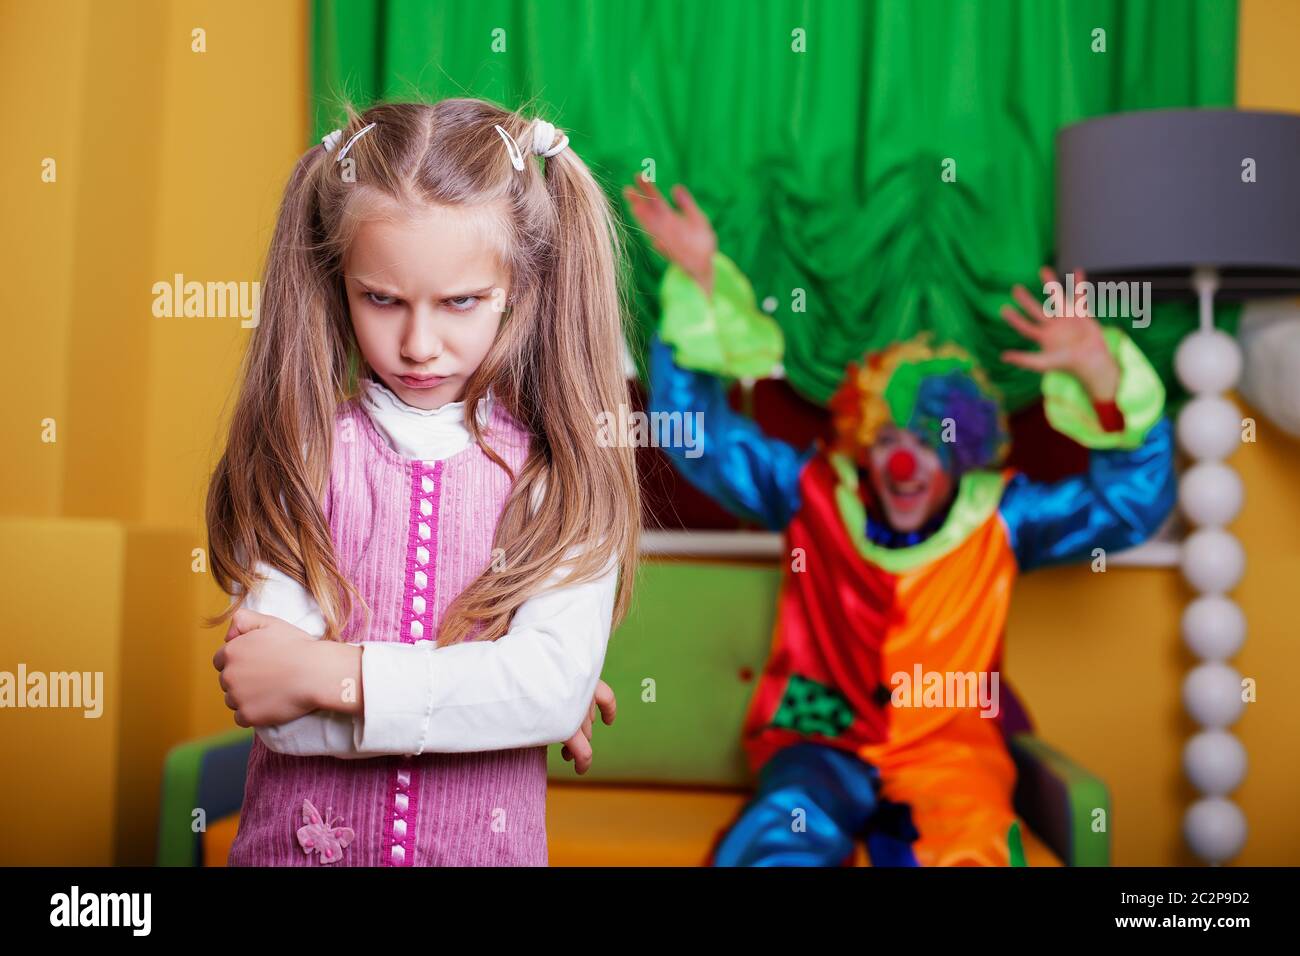 Clown cerca di rallegrare una ragazza triste. Sala giochi sullo sfondo. Foto Stock